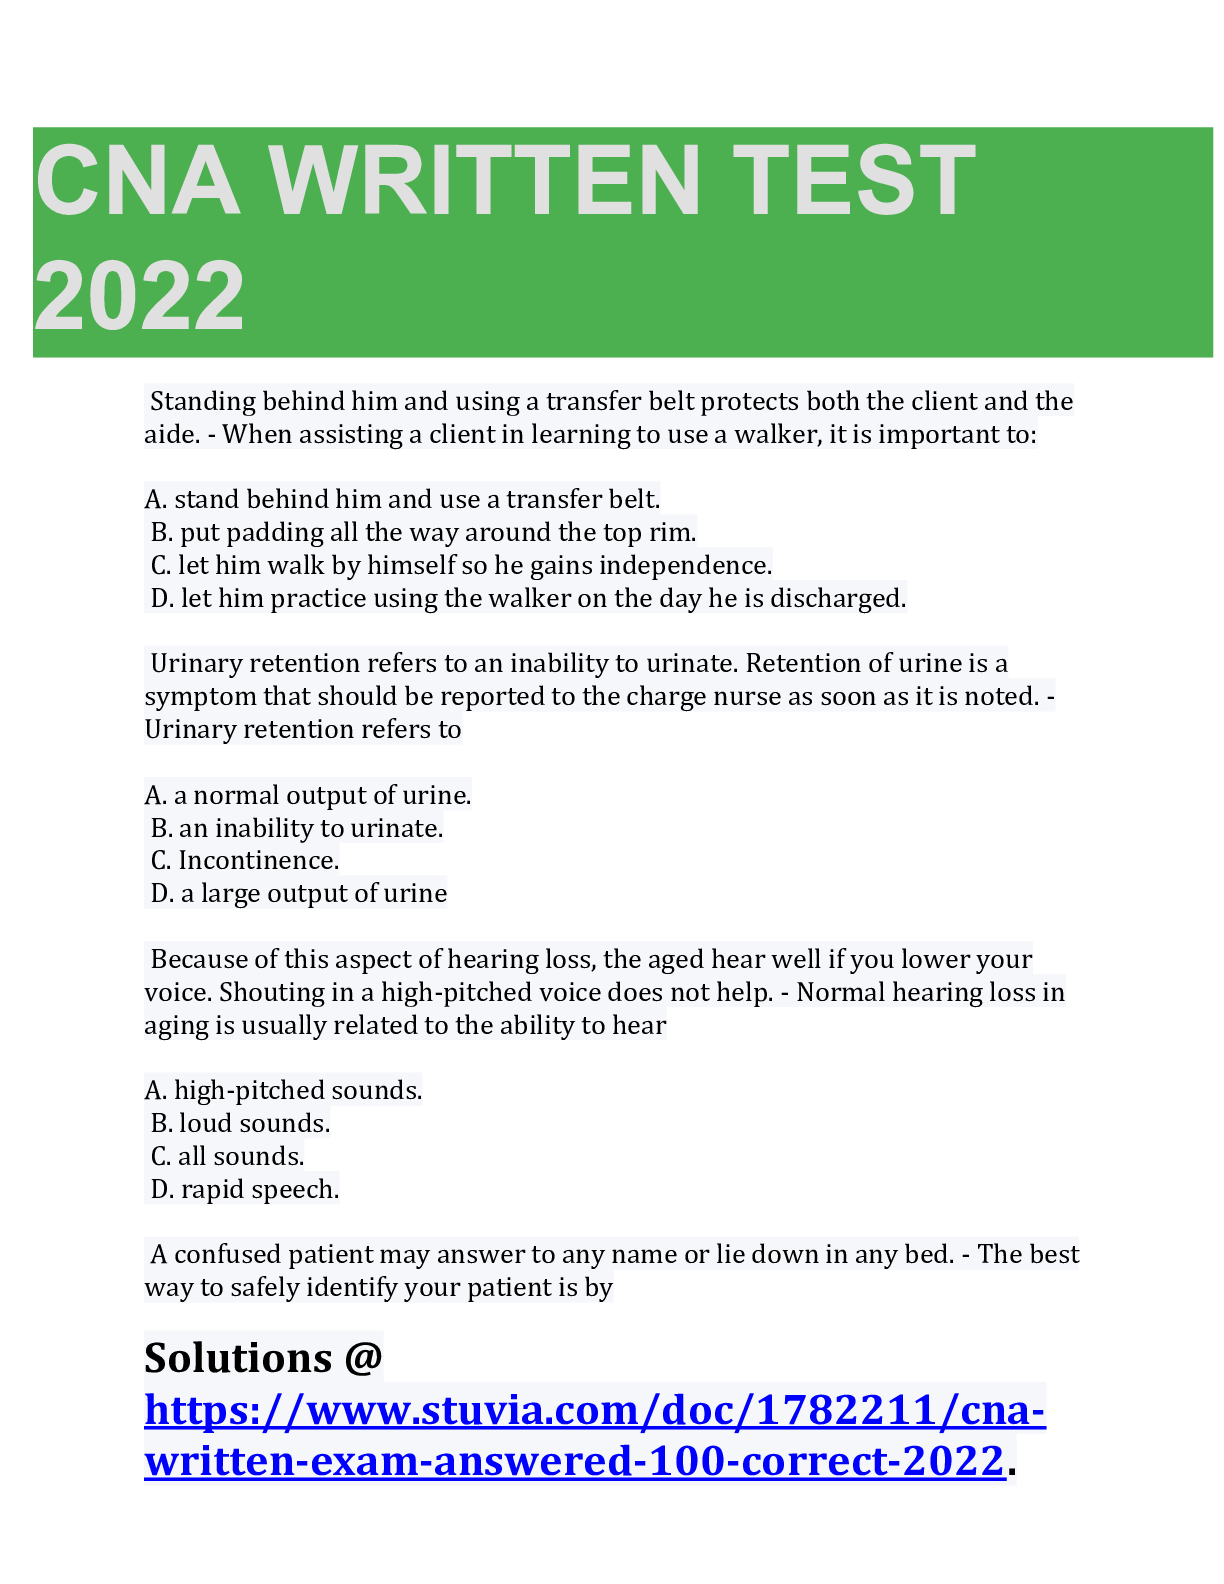 cna written test sample questions